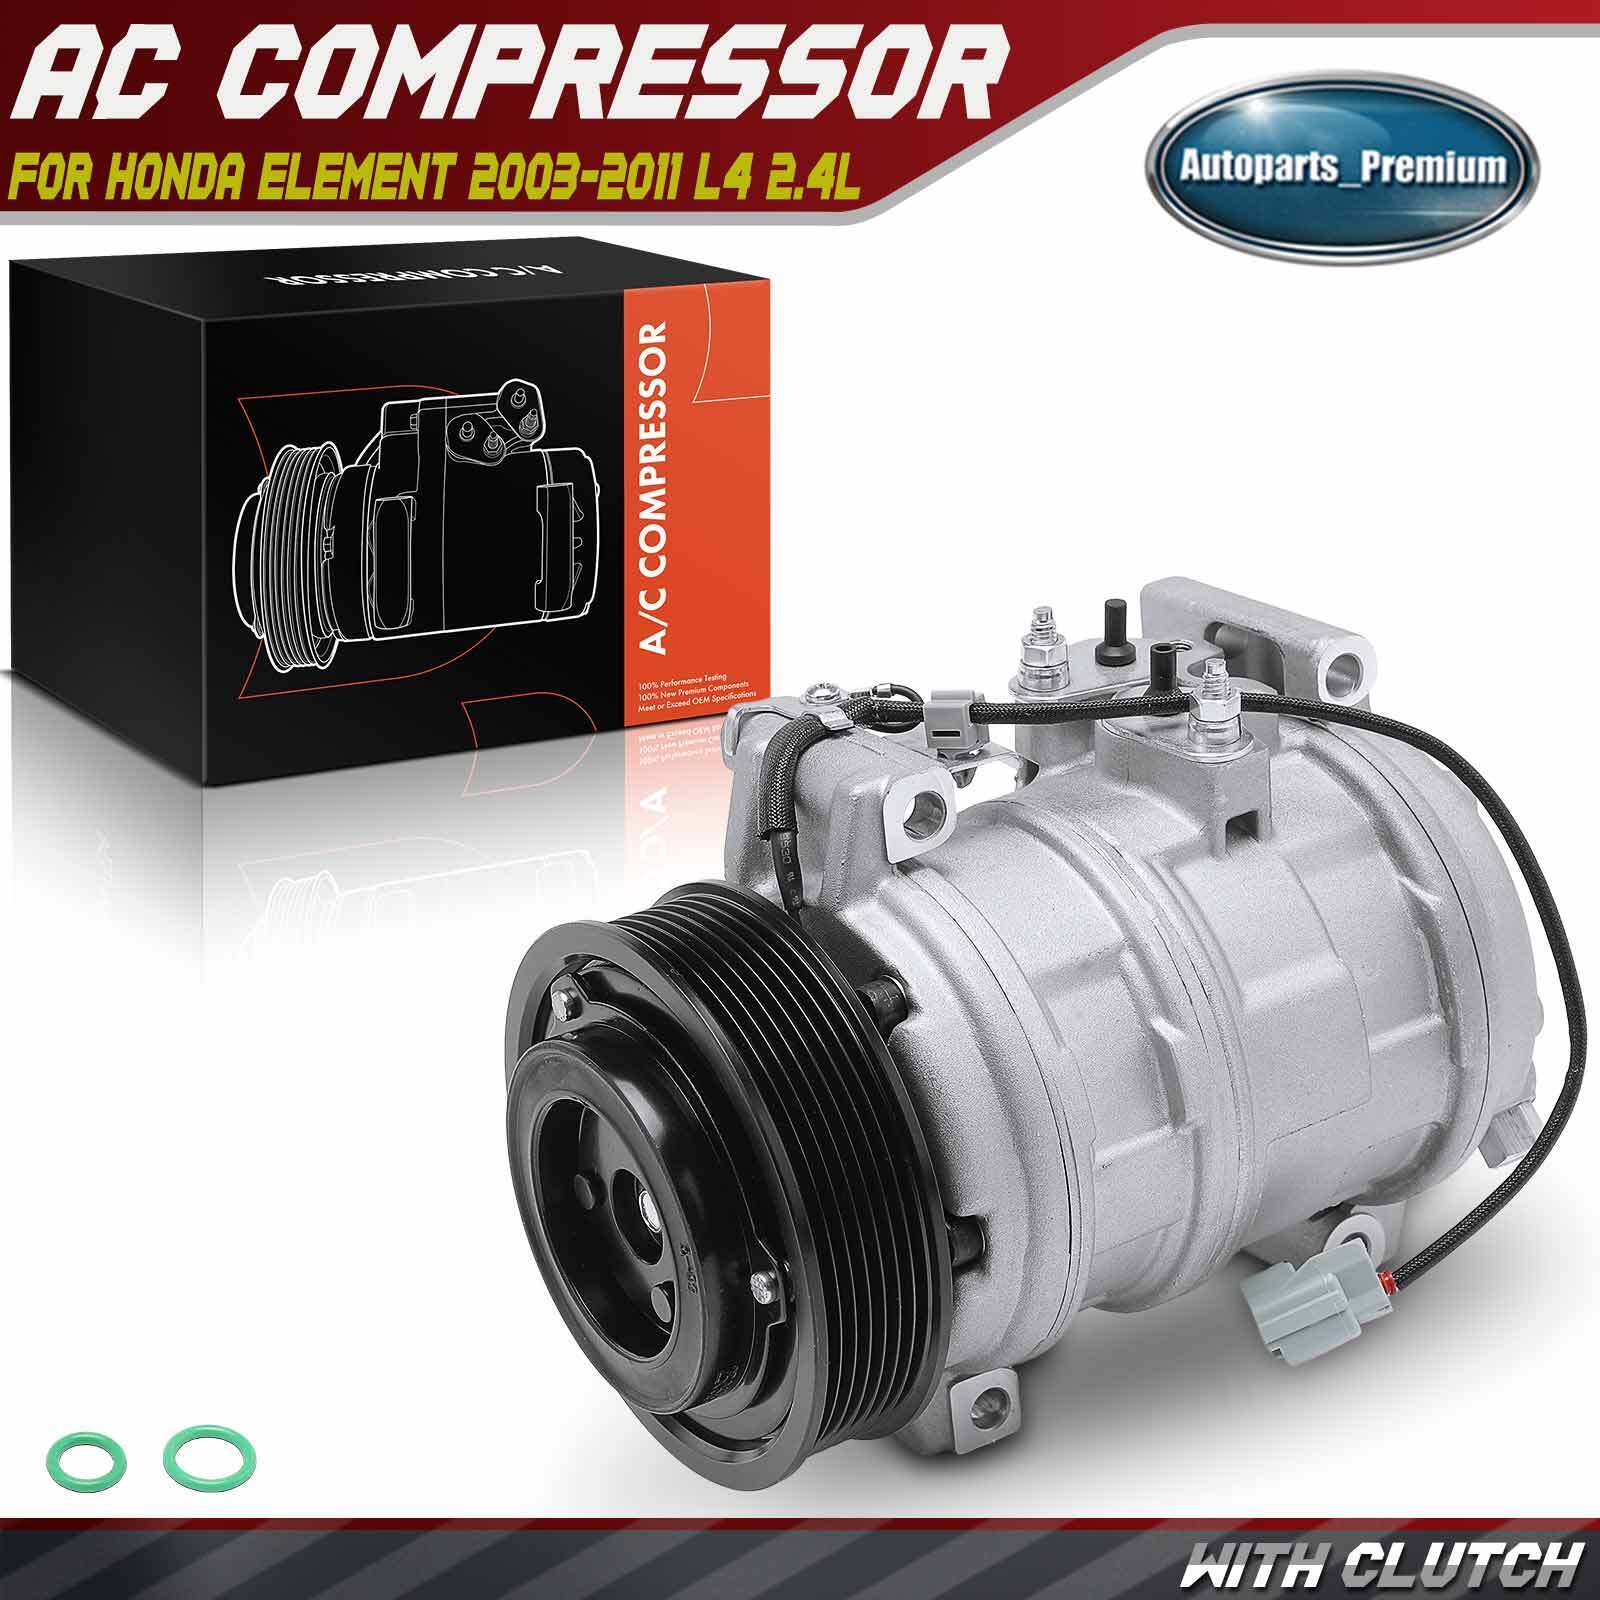 New AC Compressor with Clutch for Honda Element 2003-2011 L4 2.4L 38810PZDA00